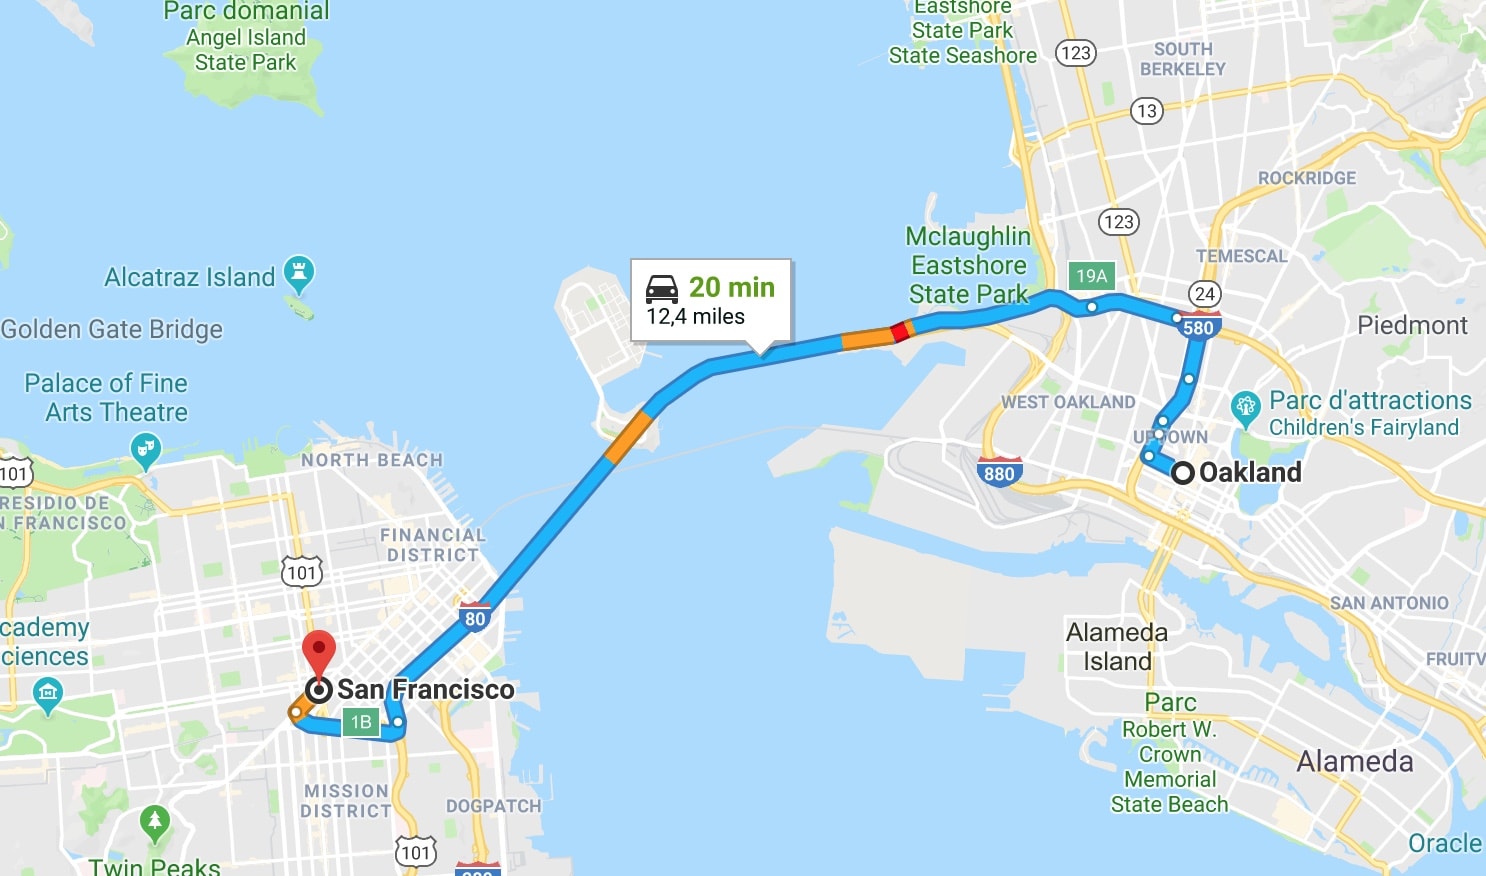 Carte Google Maps affichant le temps et la distance entre Oakland et San Francisco.